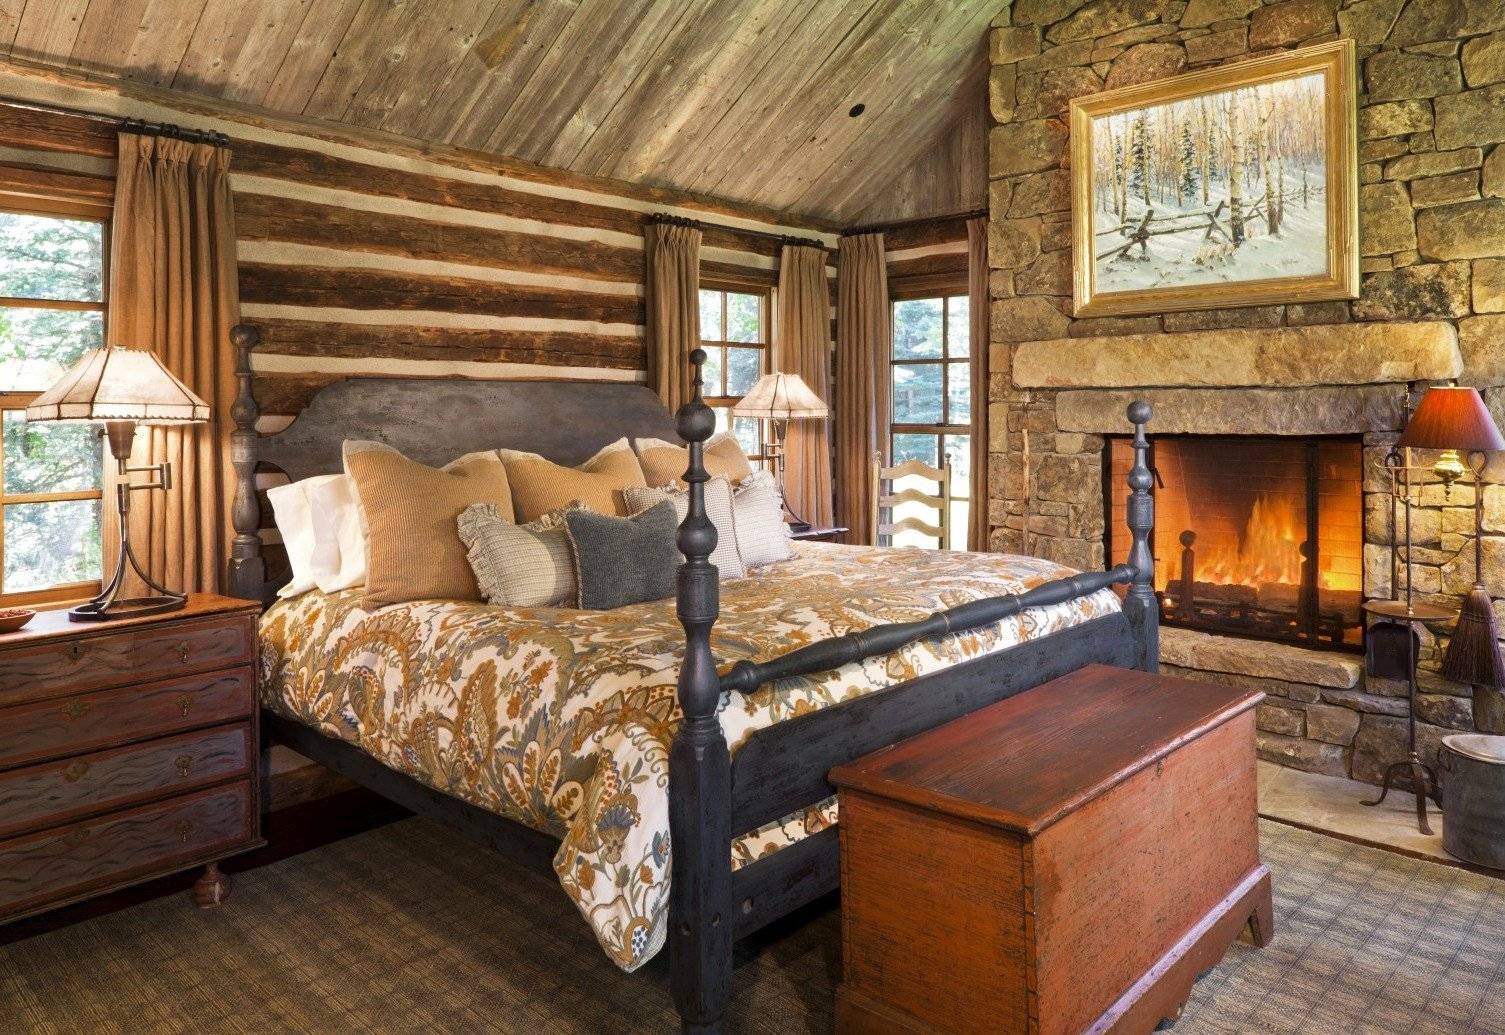 Спальня в деревенском стиле — 100 фото примеров необычного дизайна в спальне